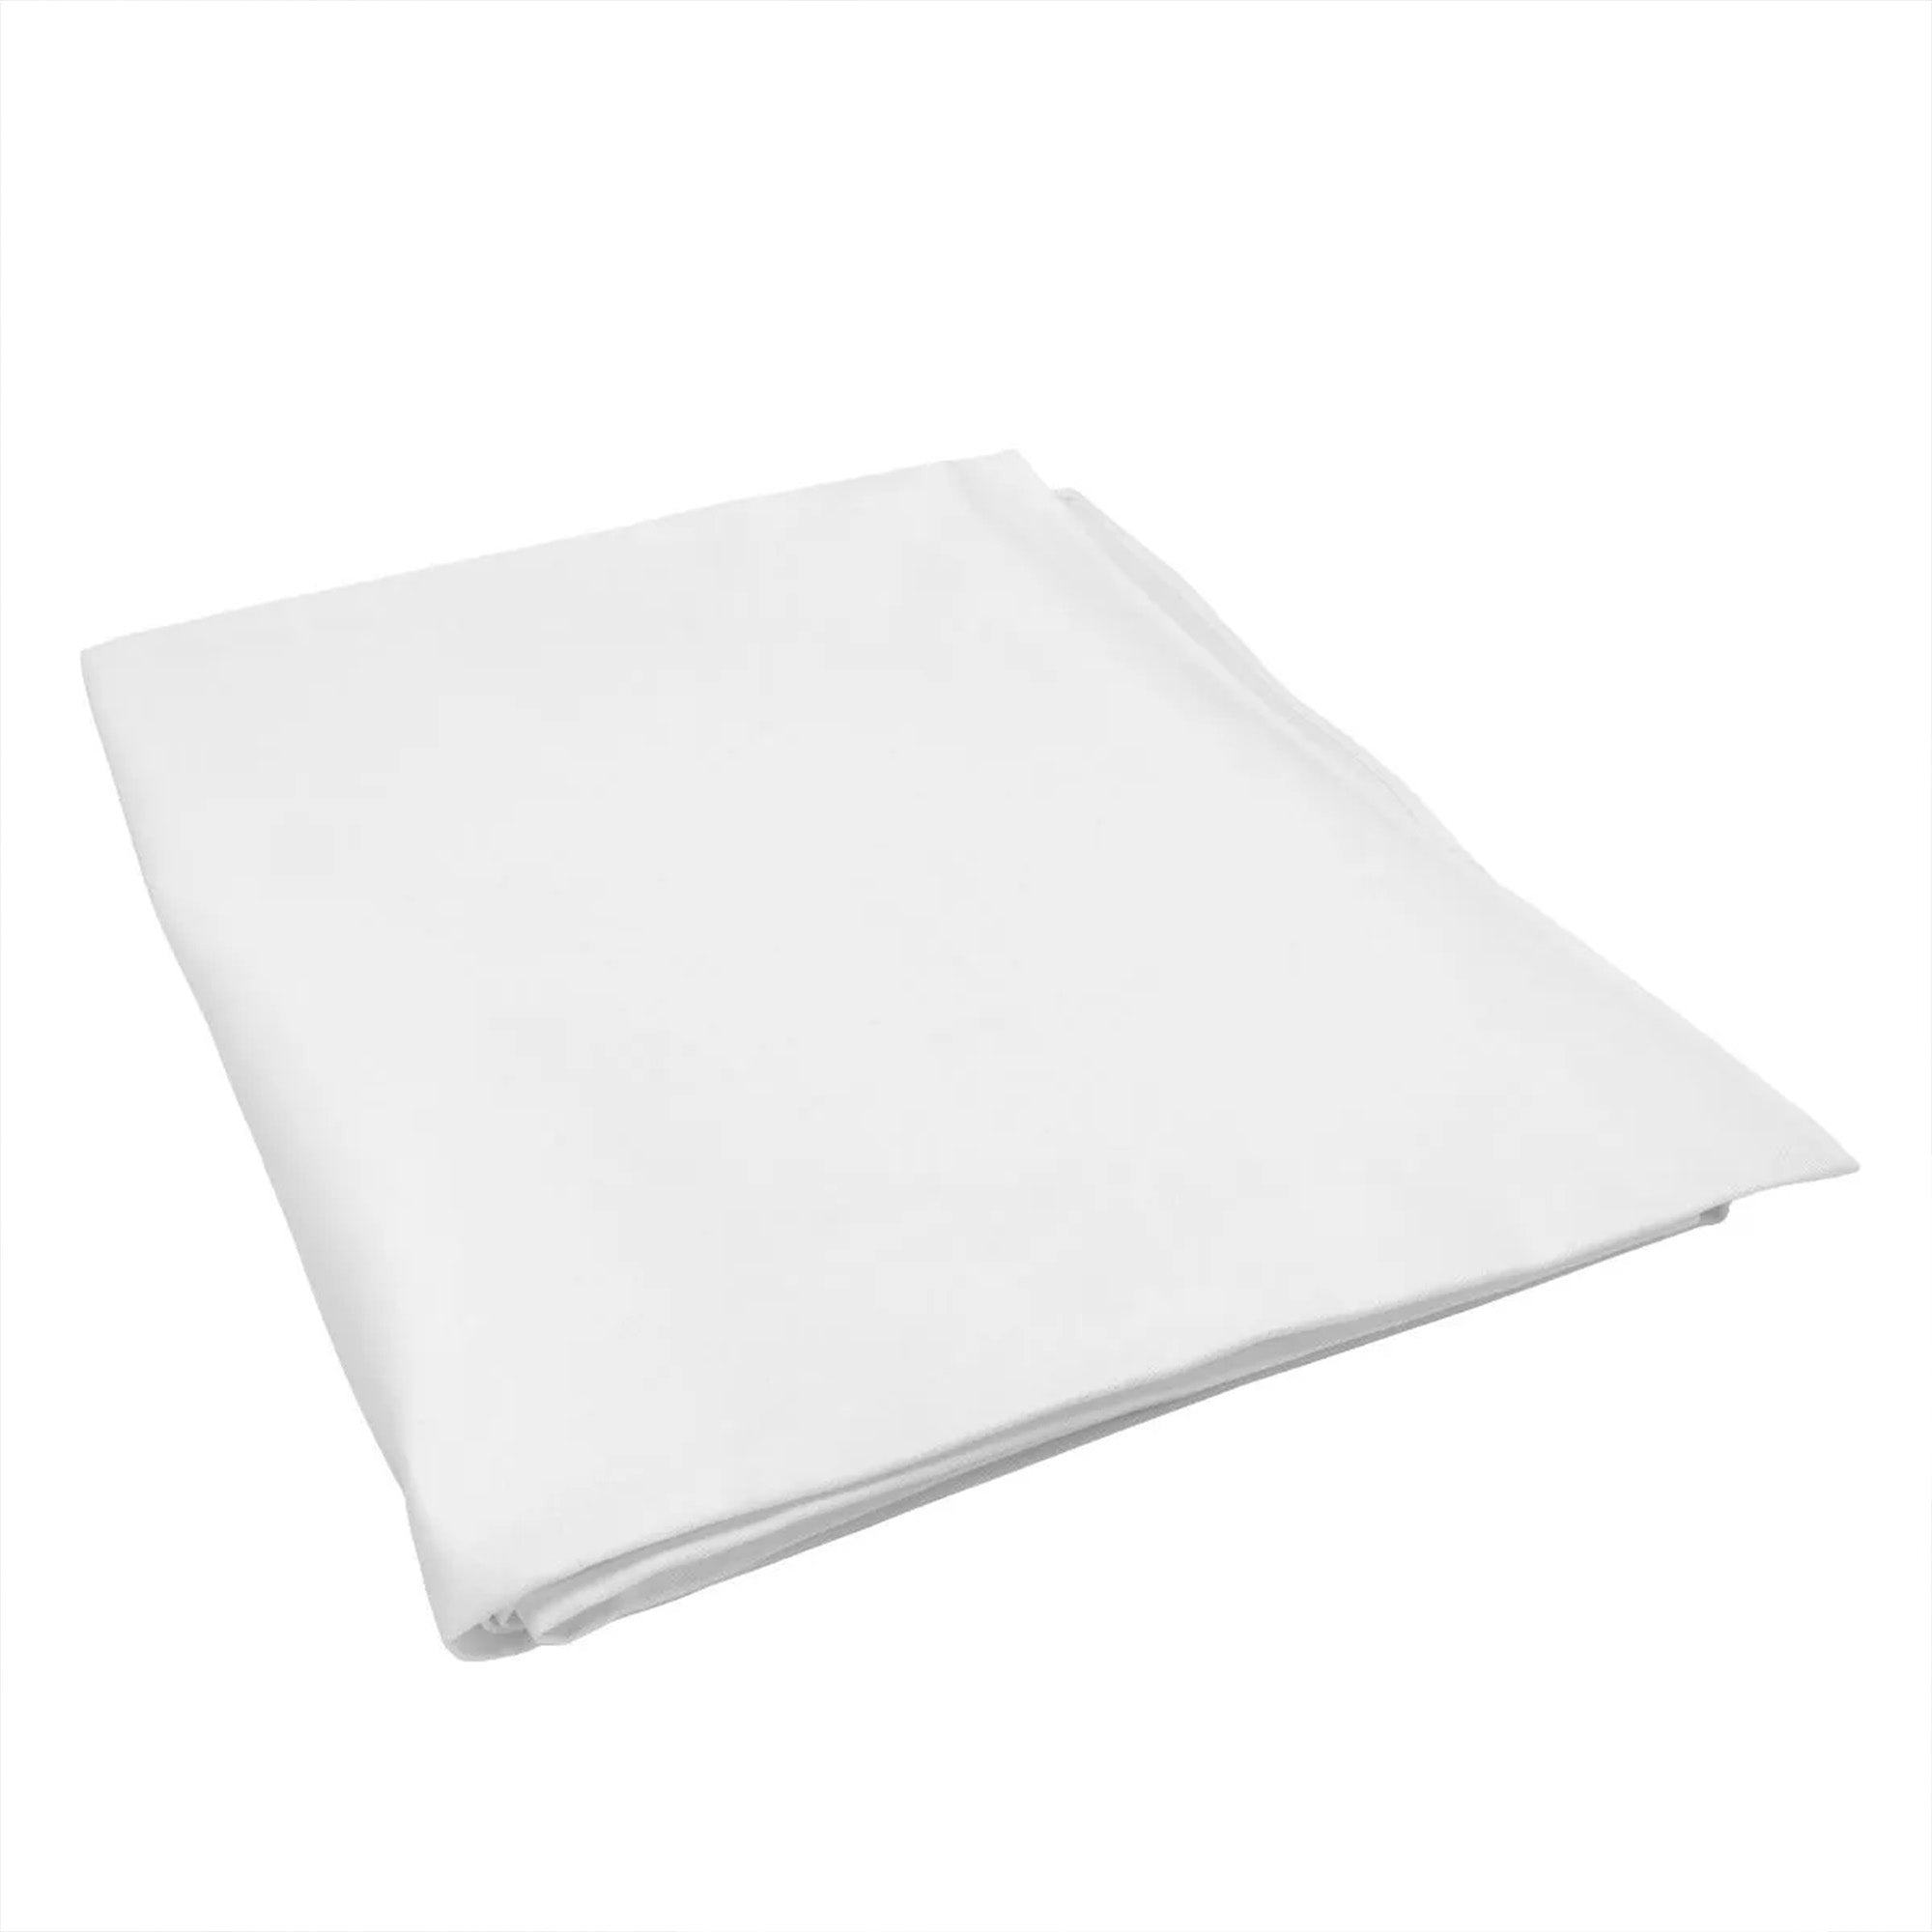 (30 Stykker) Damast Bordduk Porto - glatt sateng - 130 x 220 cm - Hvit